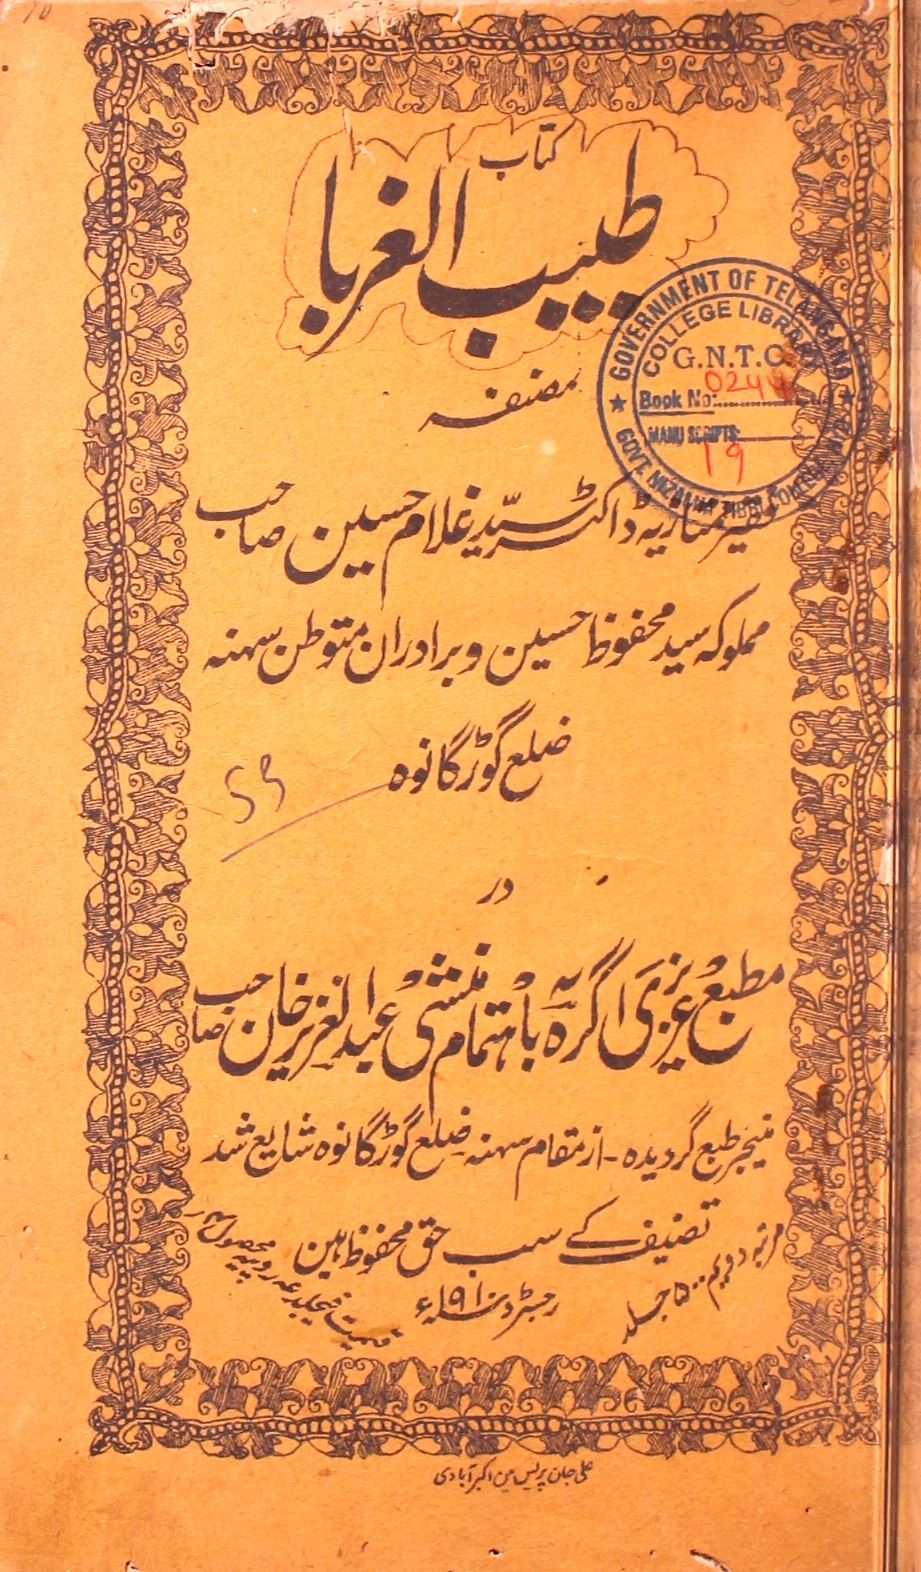 Tabeeb-ul-Ghuraba